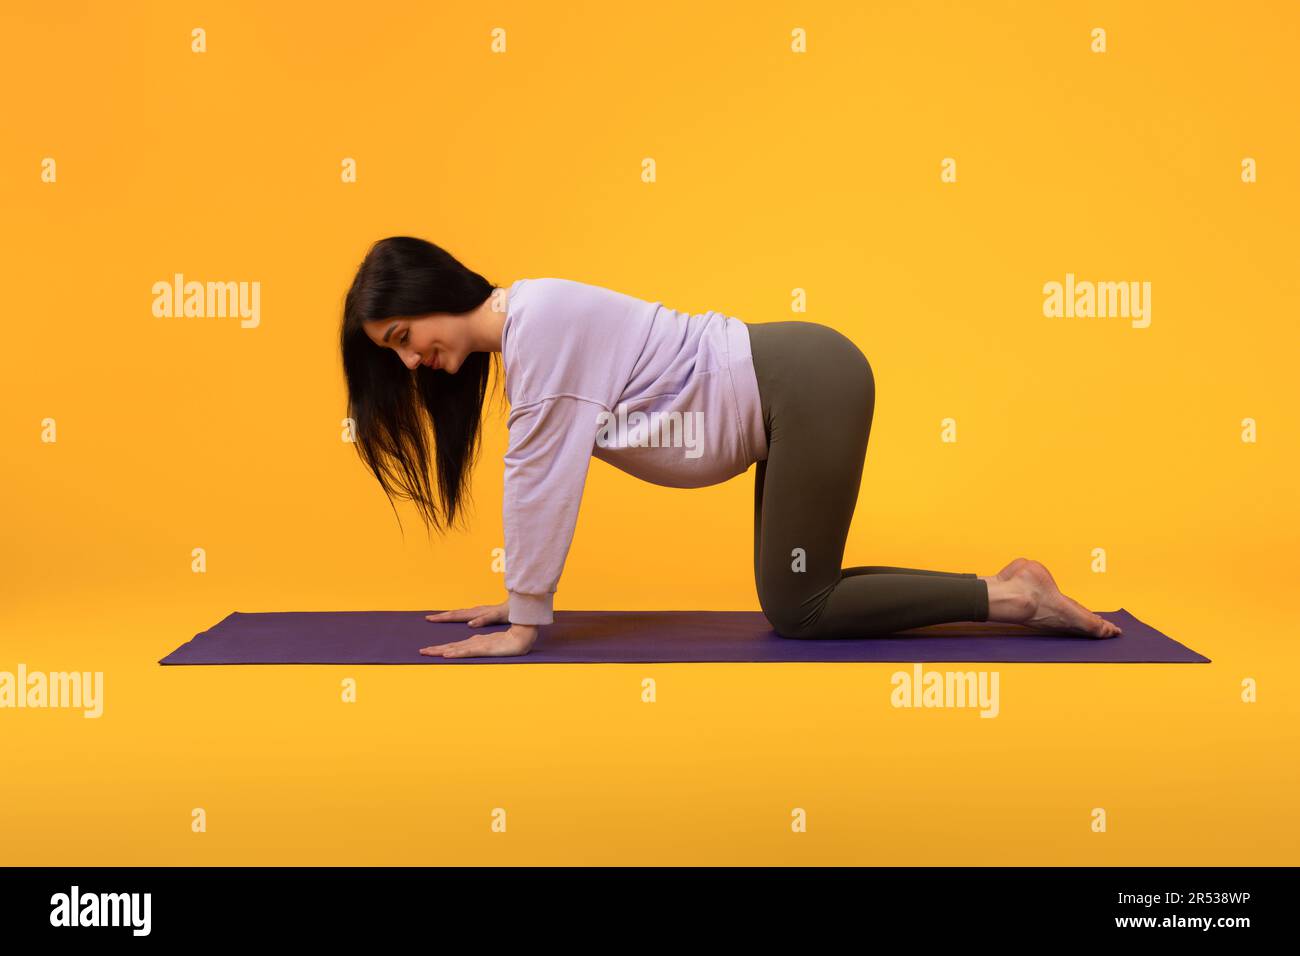 Habitudes saines. Vue latérale de la femme enceinte s'exerçant sur un tapis de yoga, pratiquant des sports sur fond jaune Banque D'Images